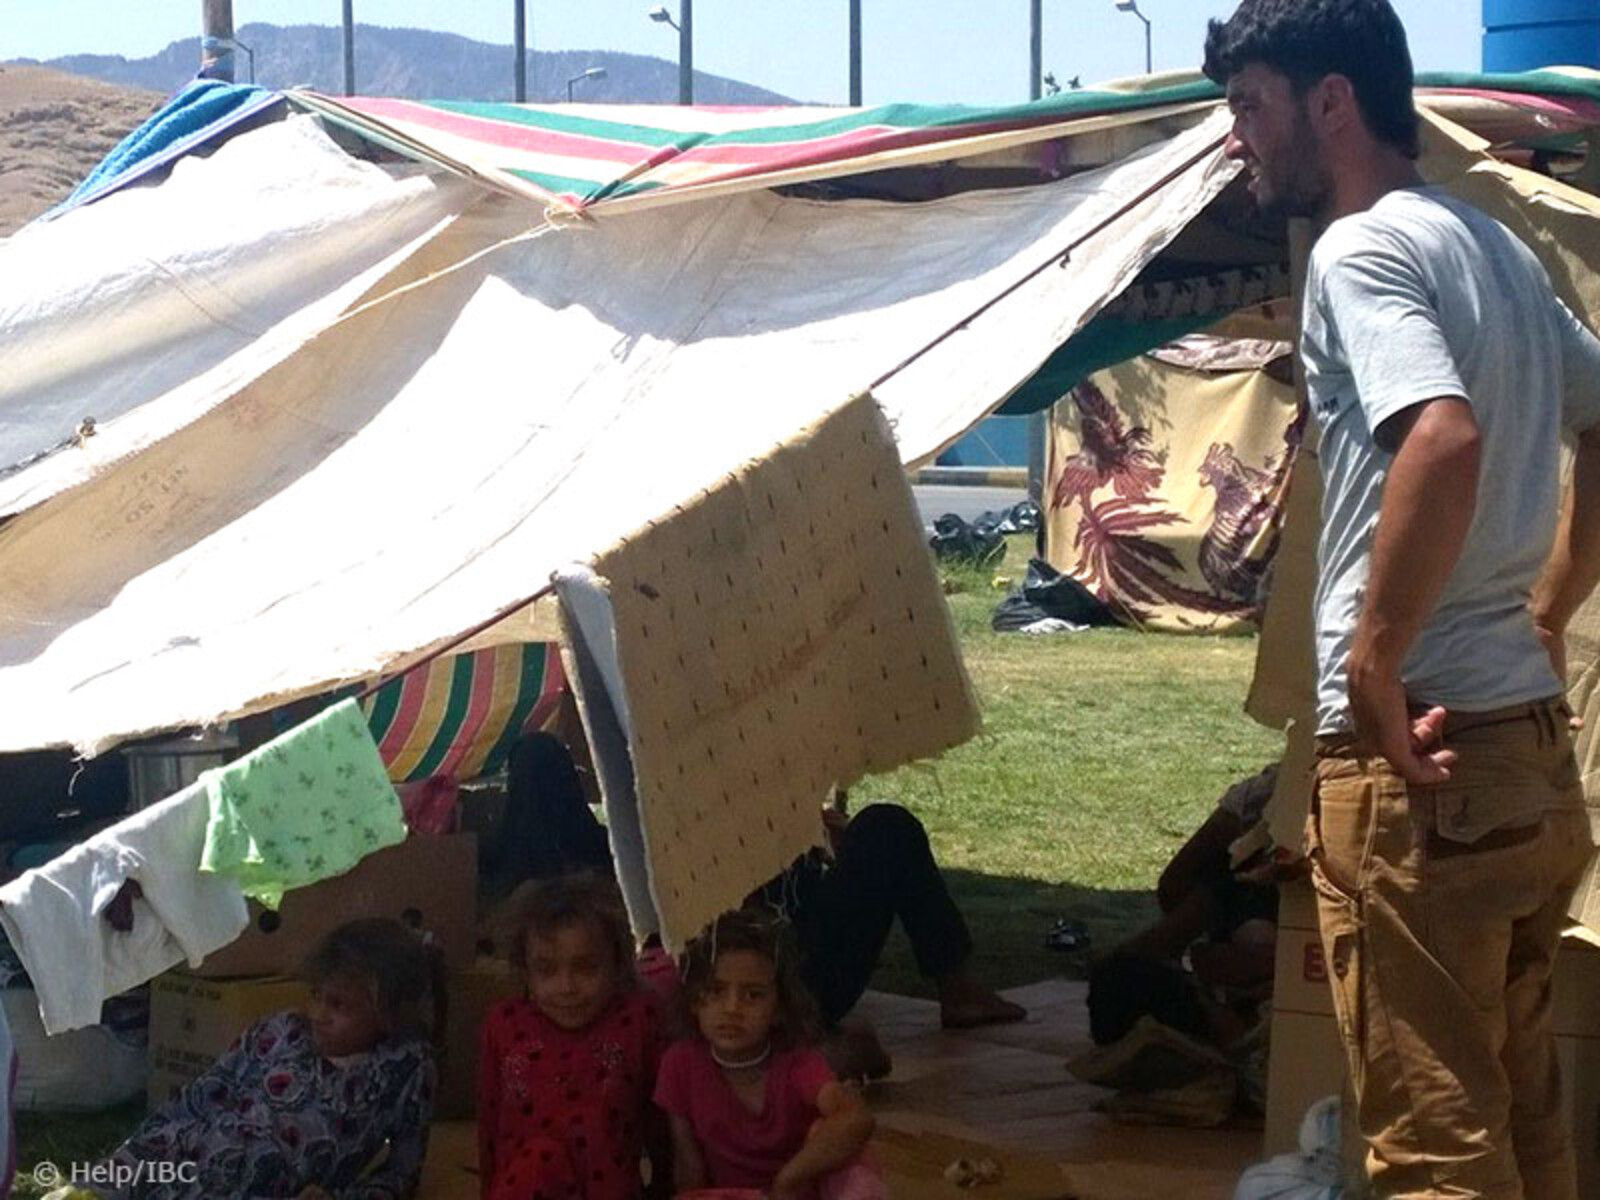 Viele Flüchtlinge suchen Schutz in improvisierten Lagern